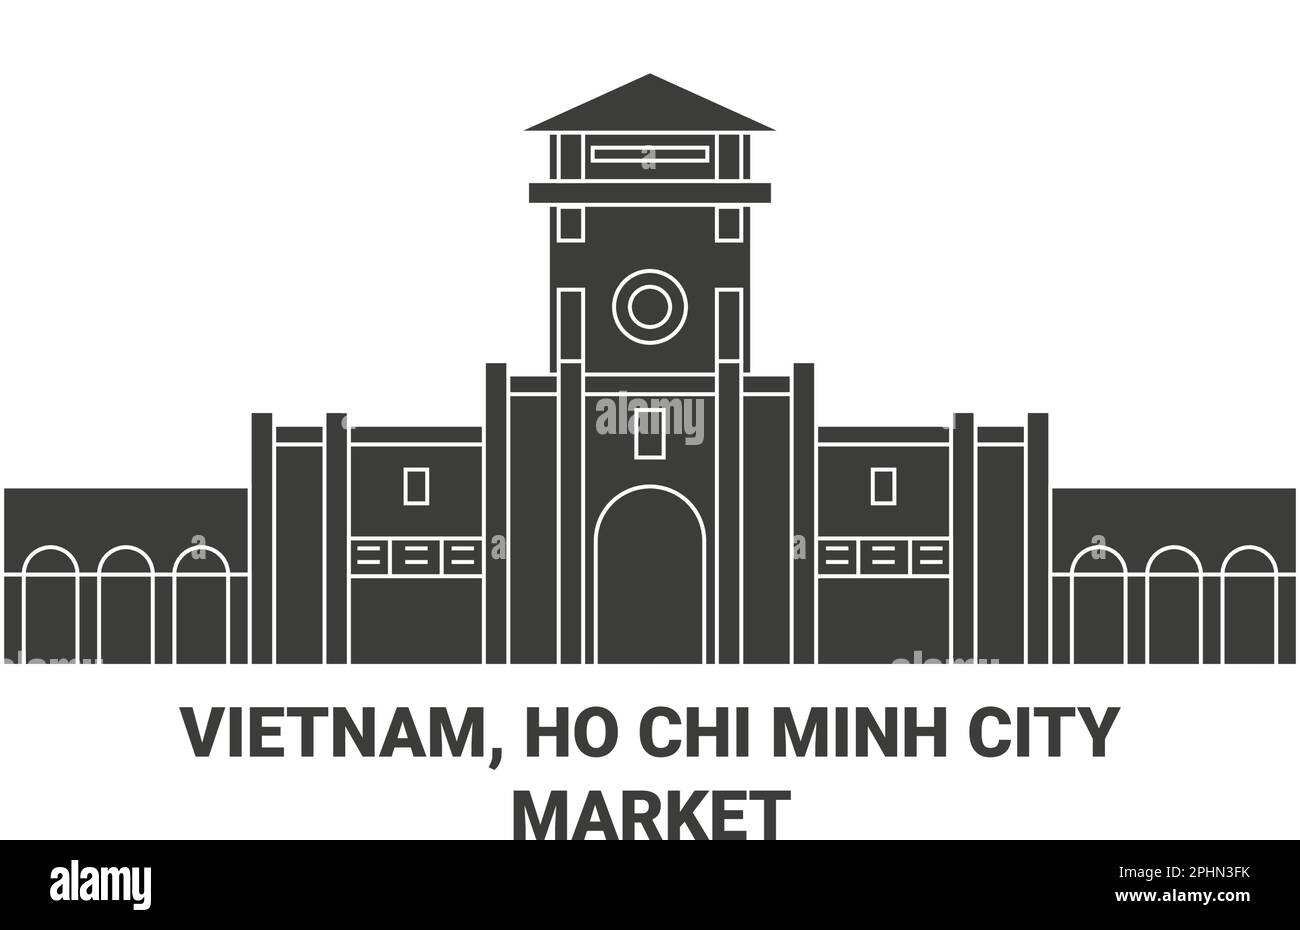 Vietnam, Ho Chi Minh City, Bn Thnh Market travel landmark vector illustration Stock Vector